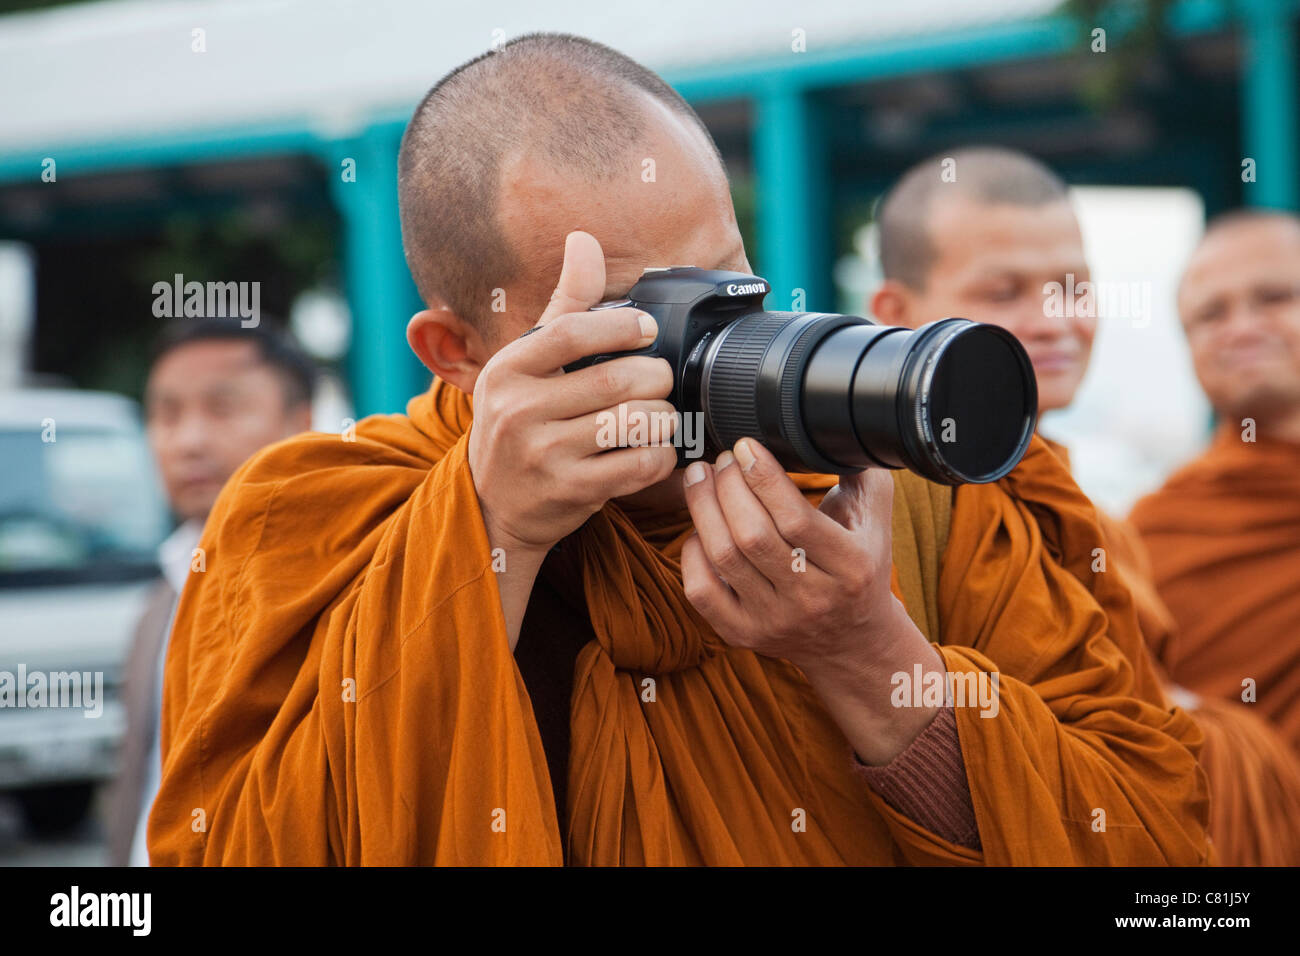 Thailand Bangkok Monk Taking Photos Stock Photo Alamy